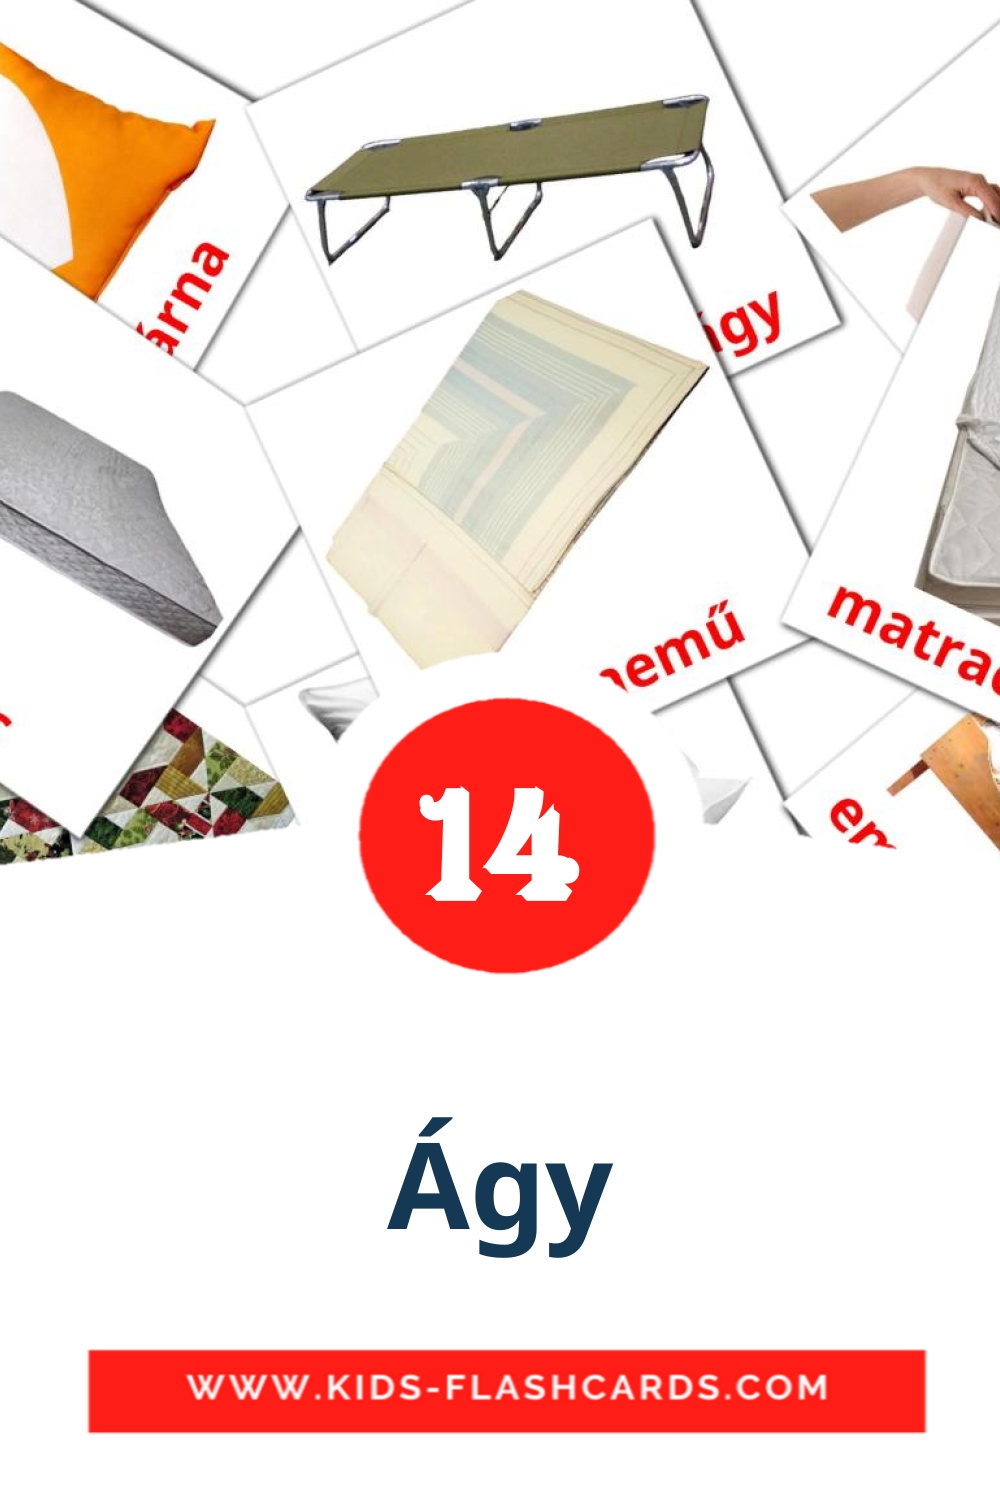 14 Cartões com Imagens de Ágy para Jardim de Infância em hungaro